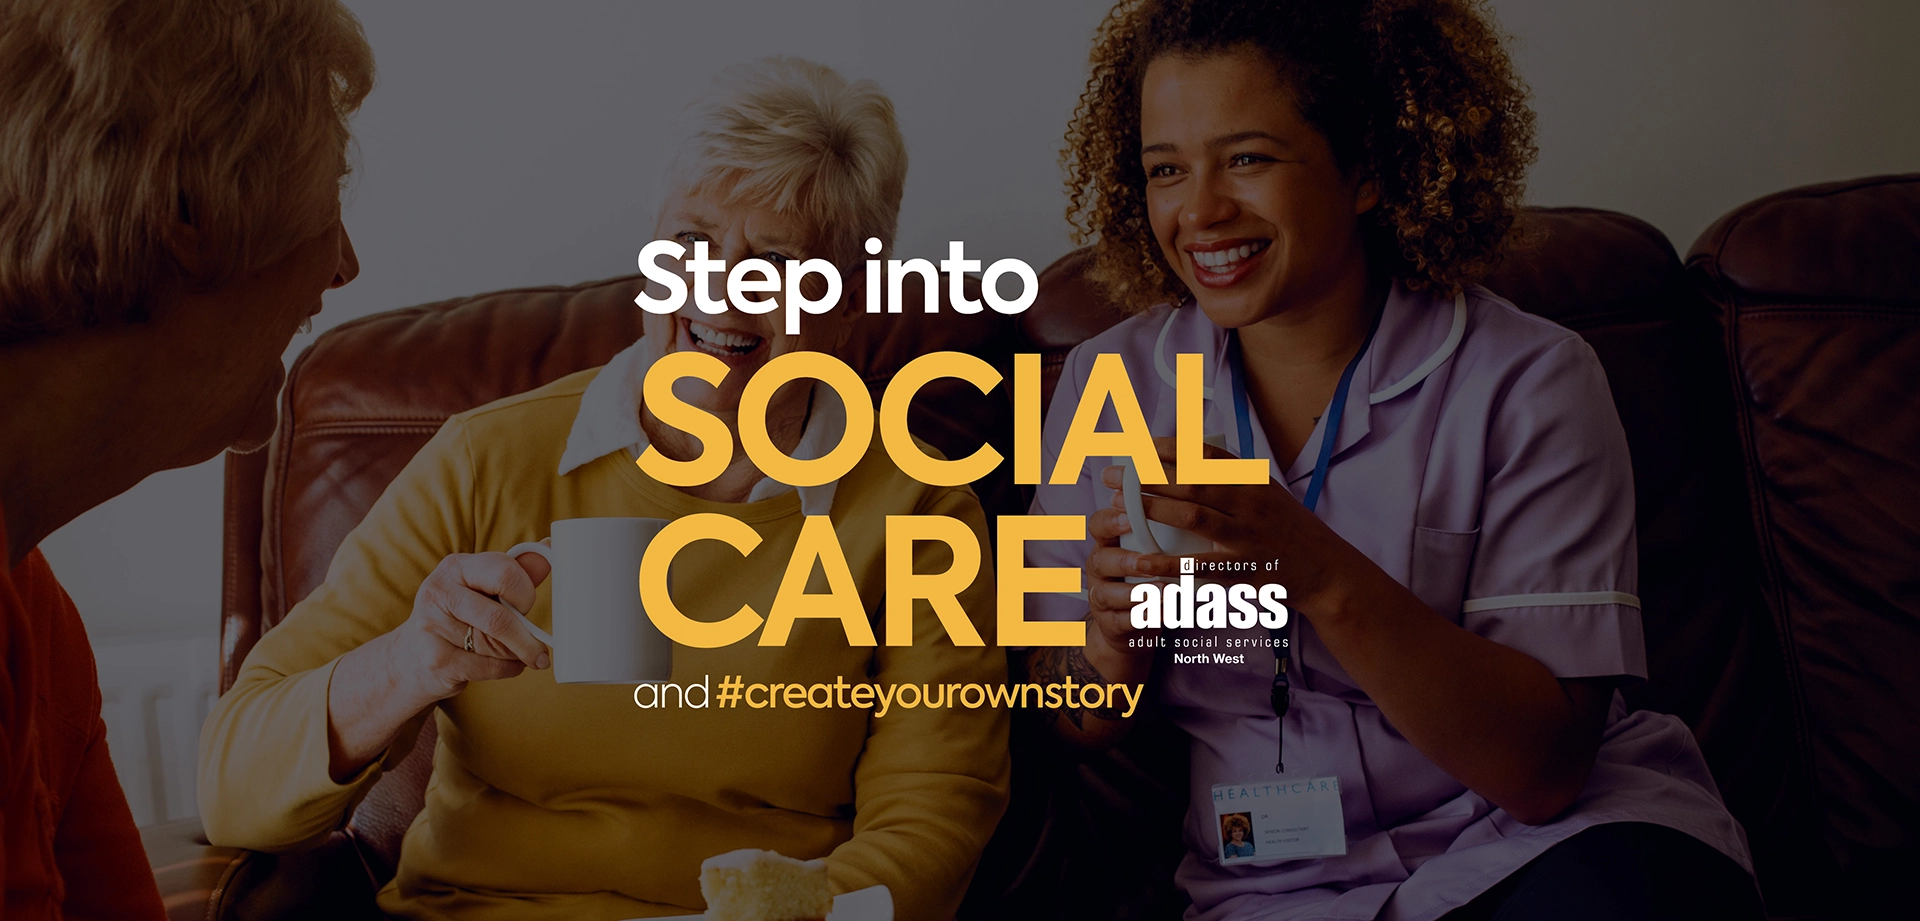 Step into Social care